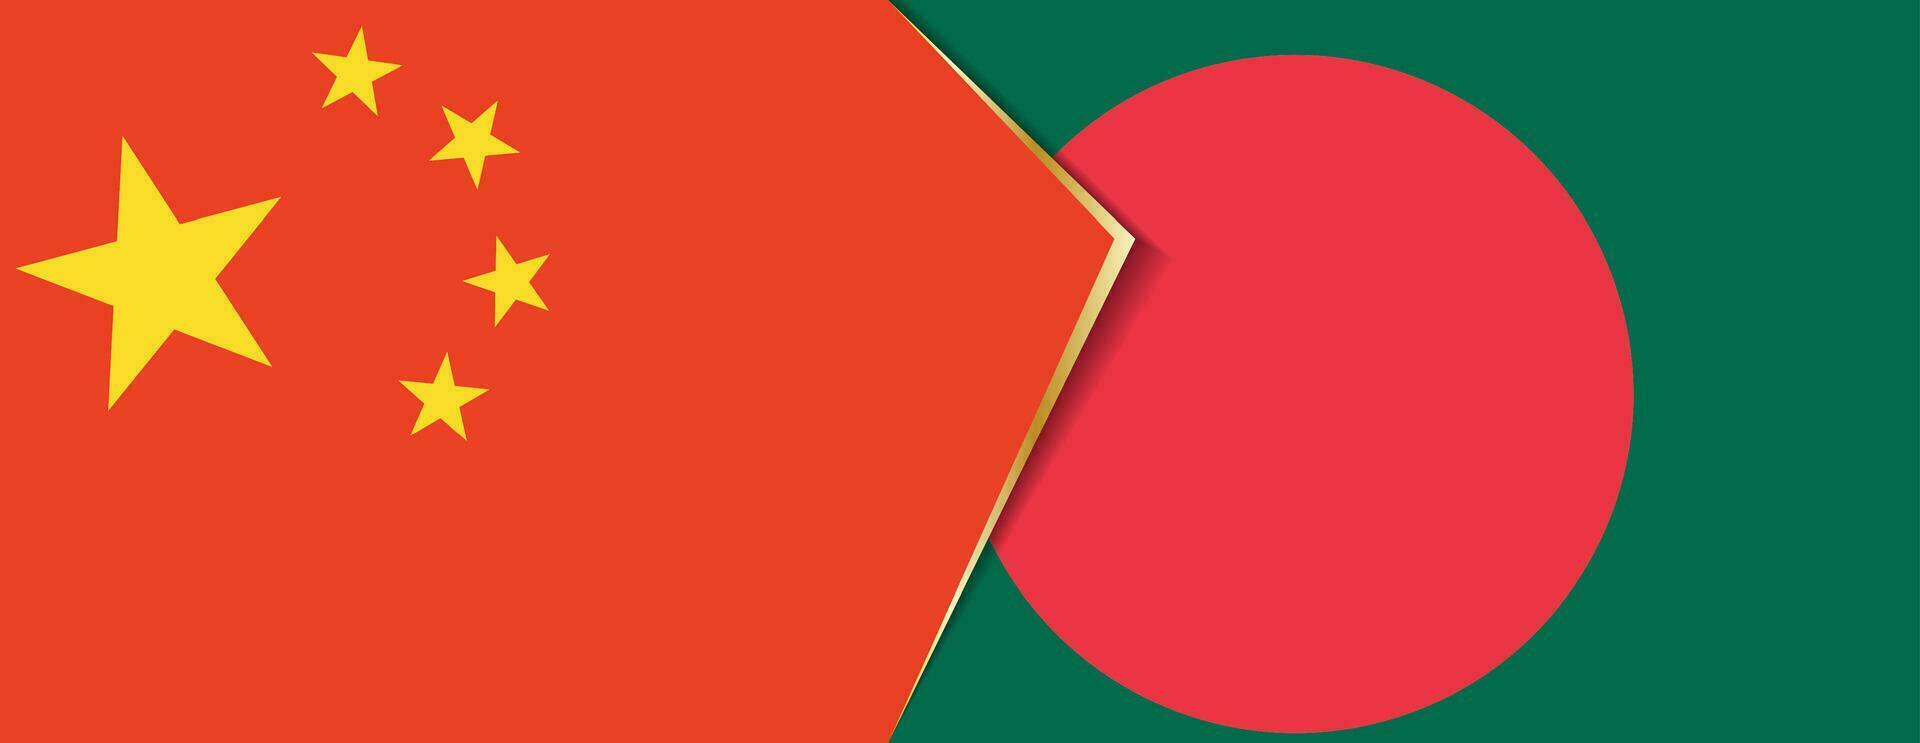 China y Bangladesh banderas, dos vector banderas